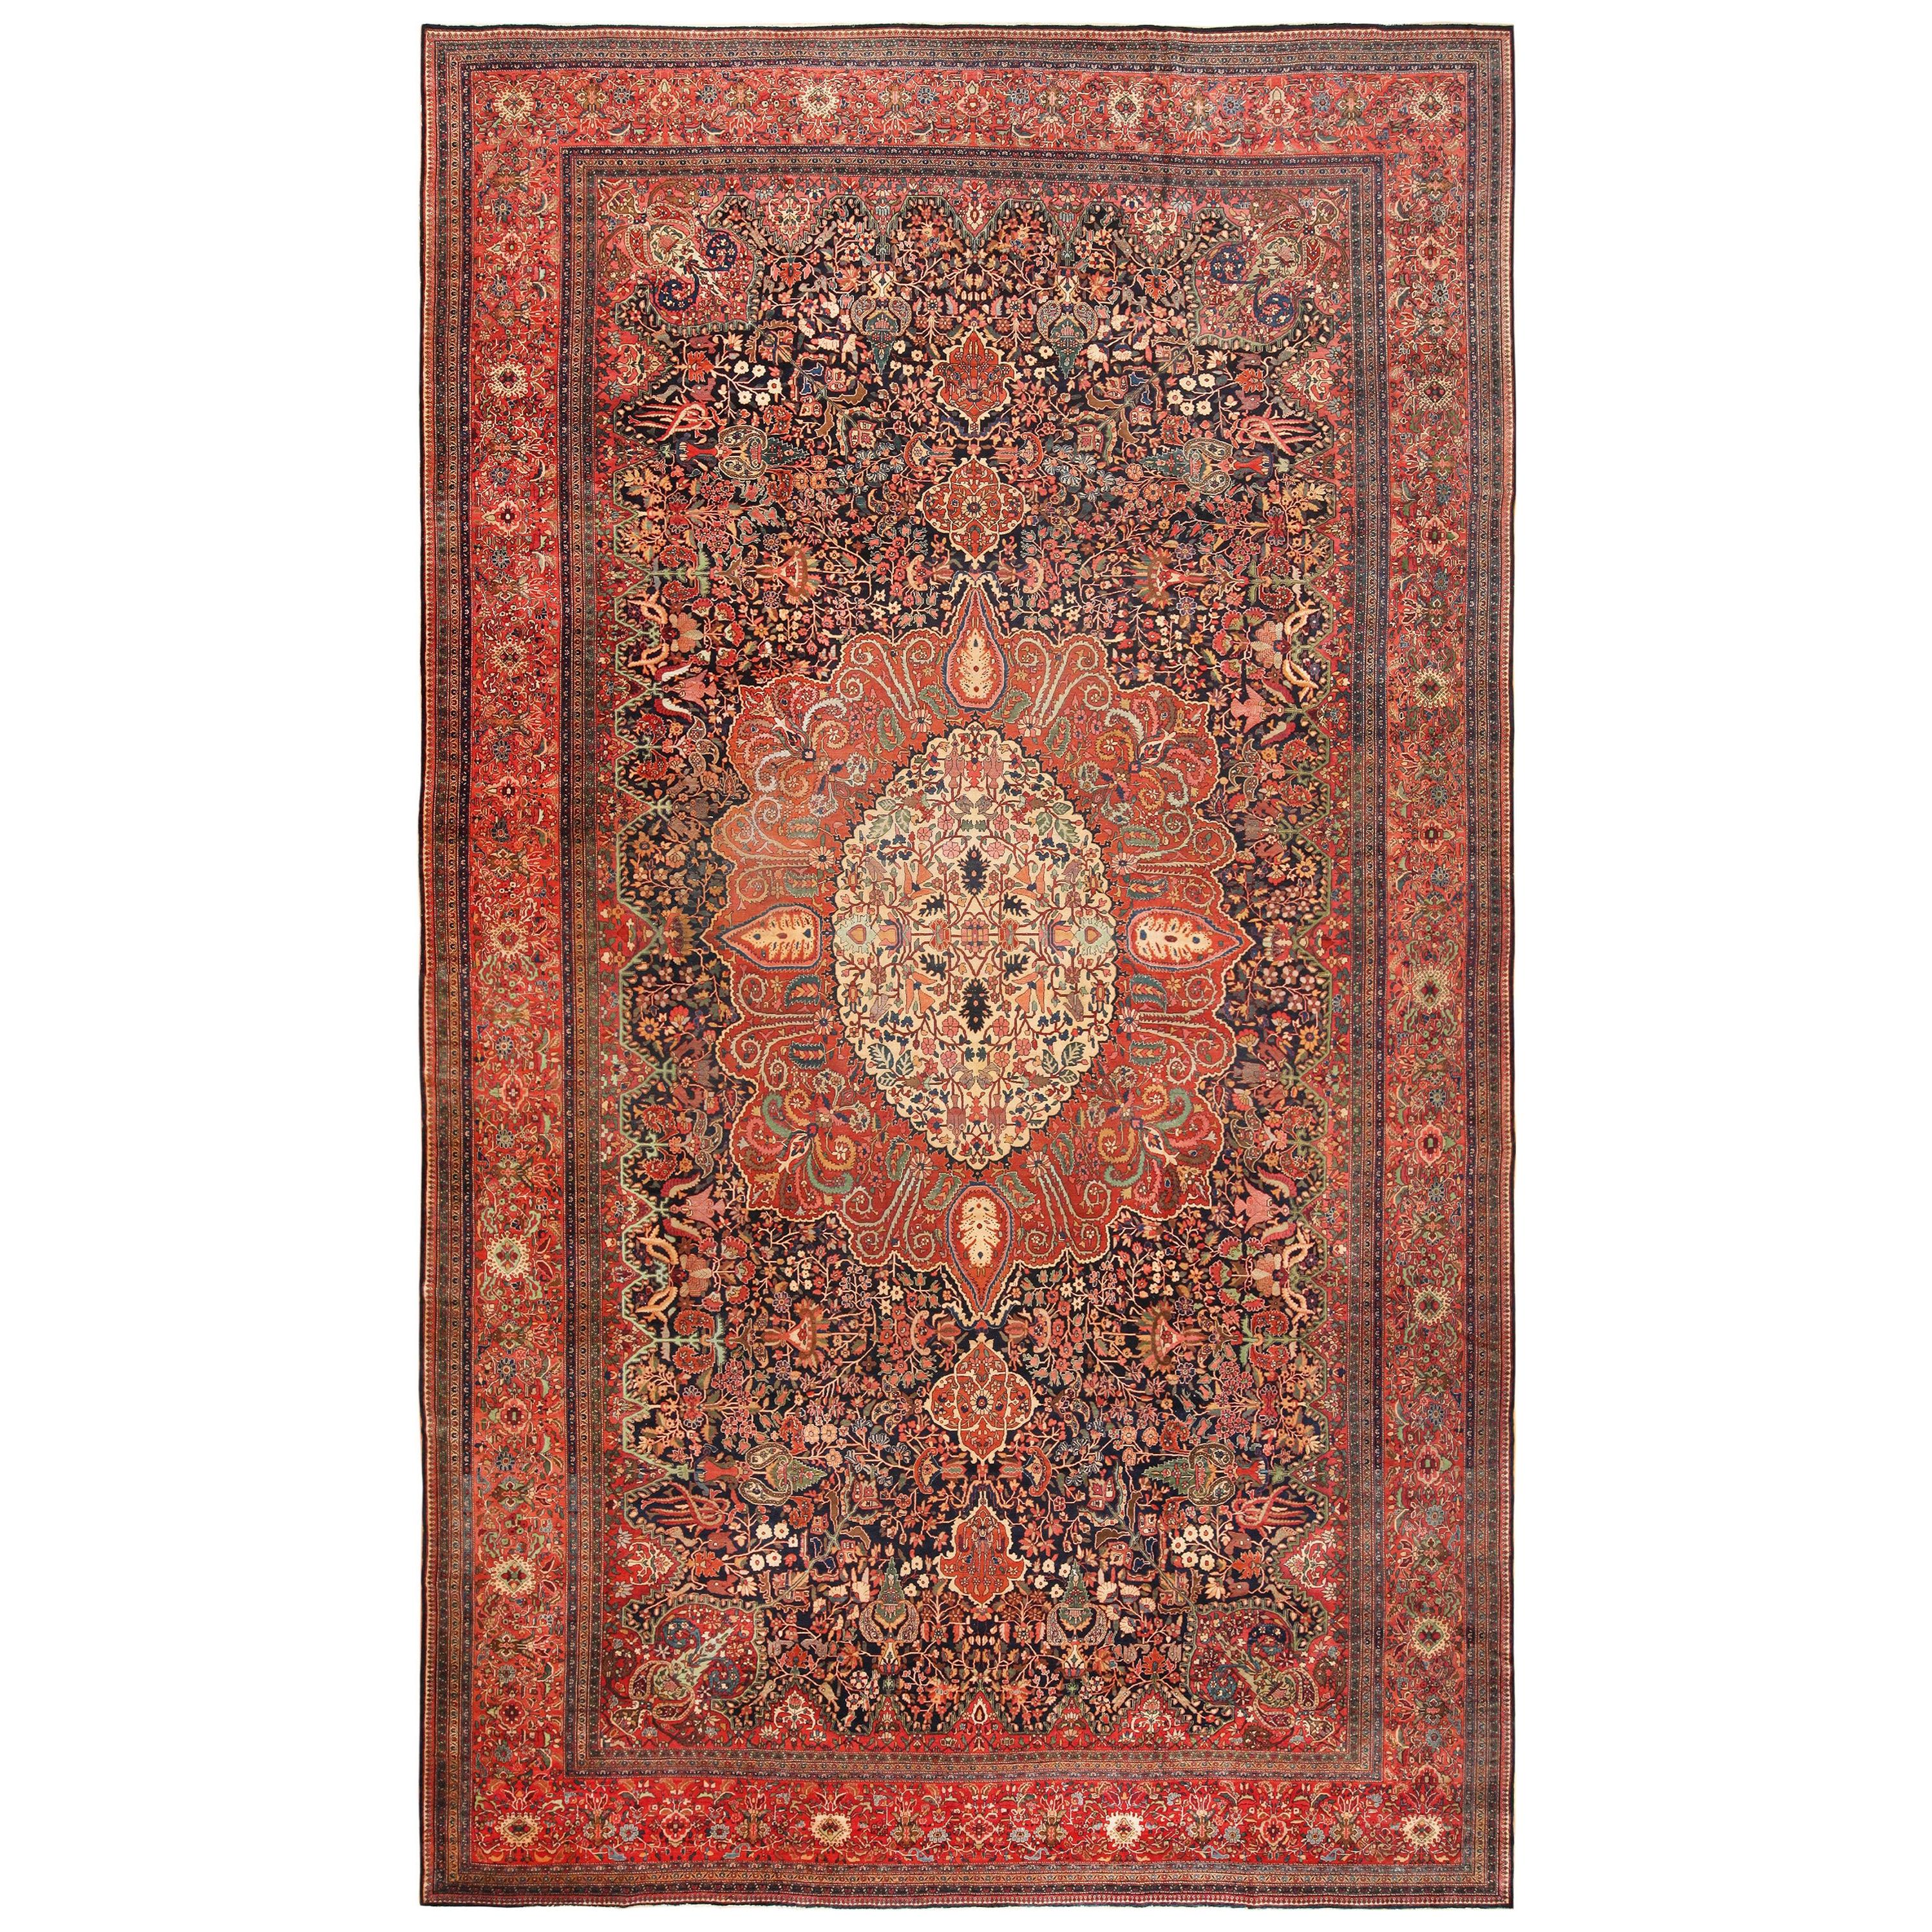 Antique tapis persan Sarouk Farahan. Taille : 13 pieds 4 po. x 23 pieds 10 po.